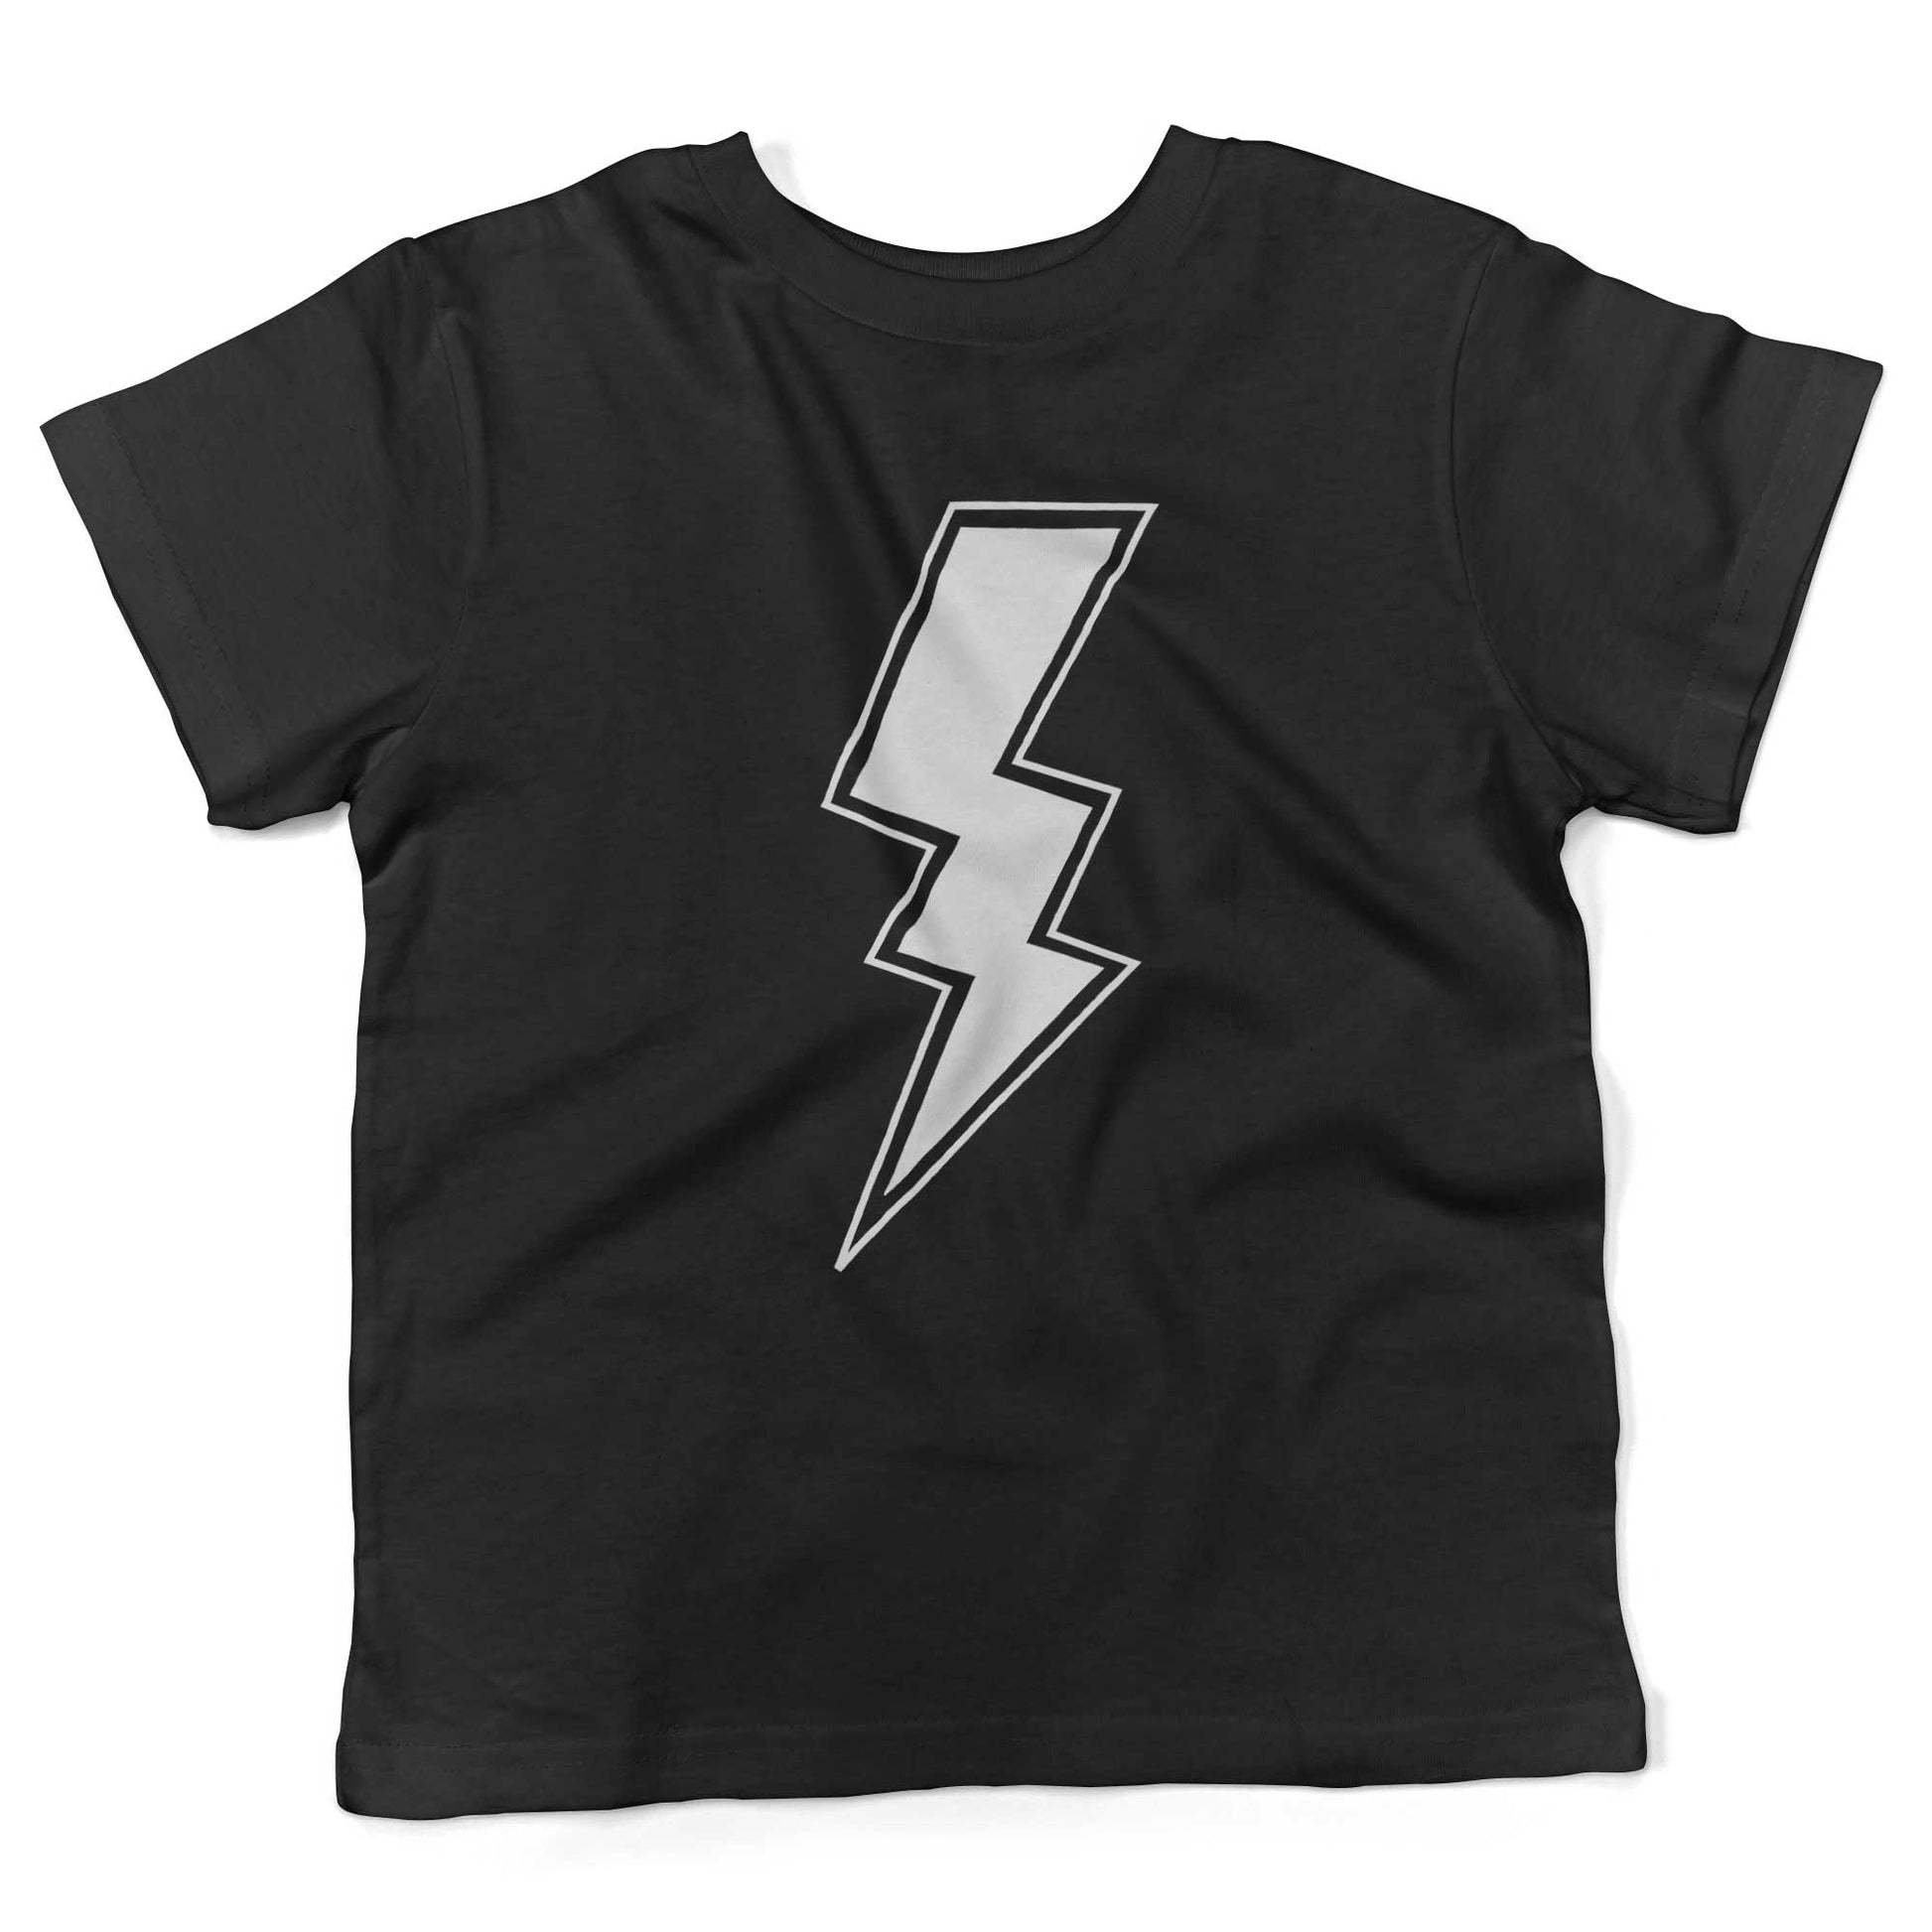 Giant Lightning Bolt Toddler Shirt-Organic Black-2T